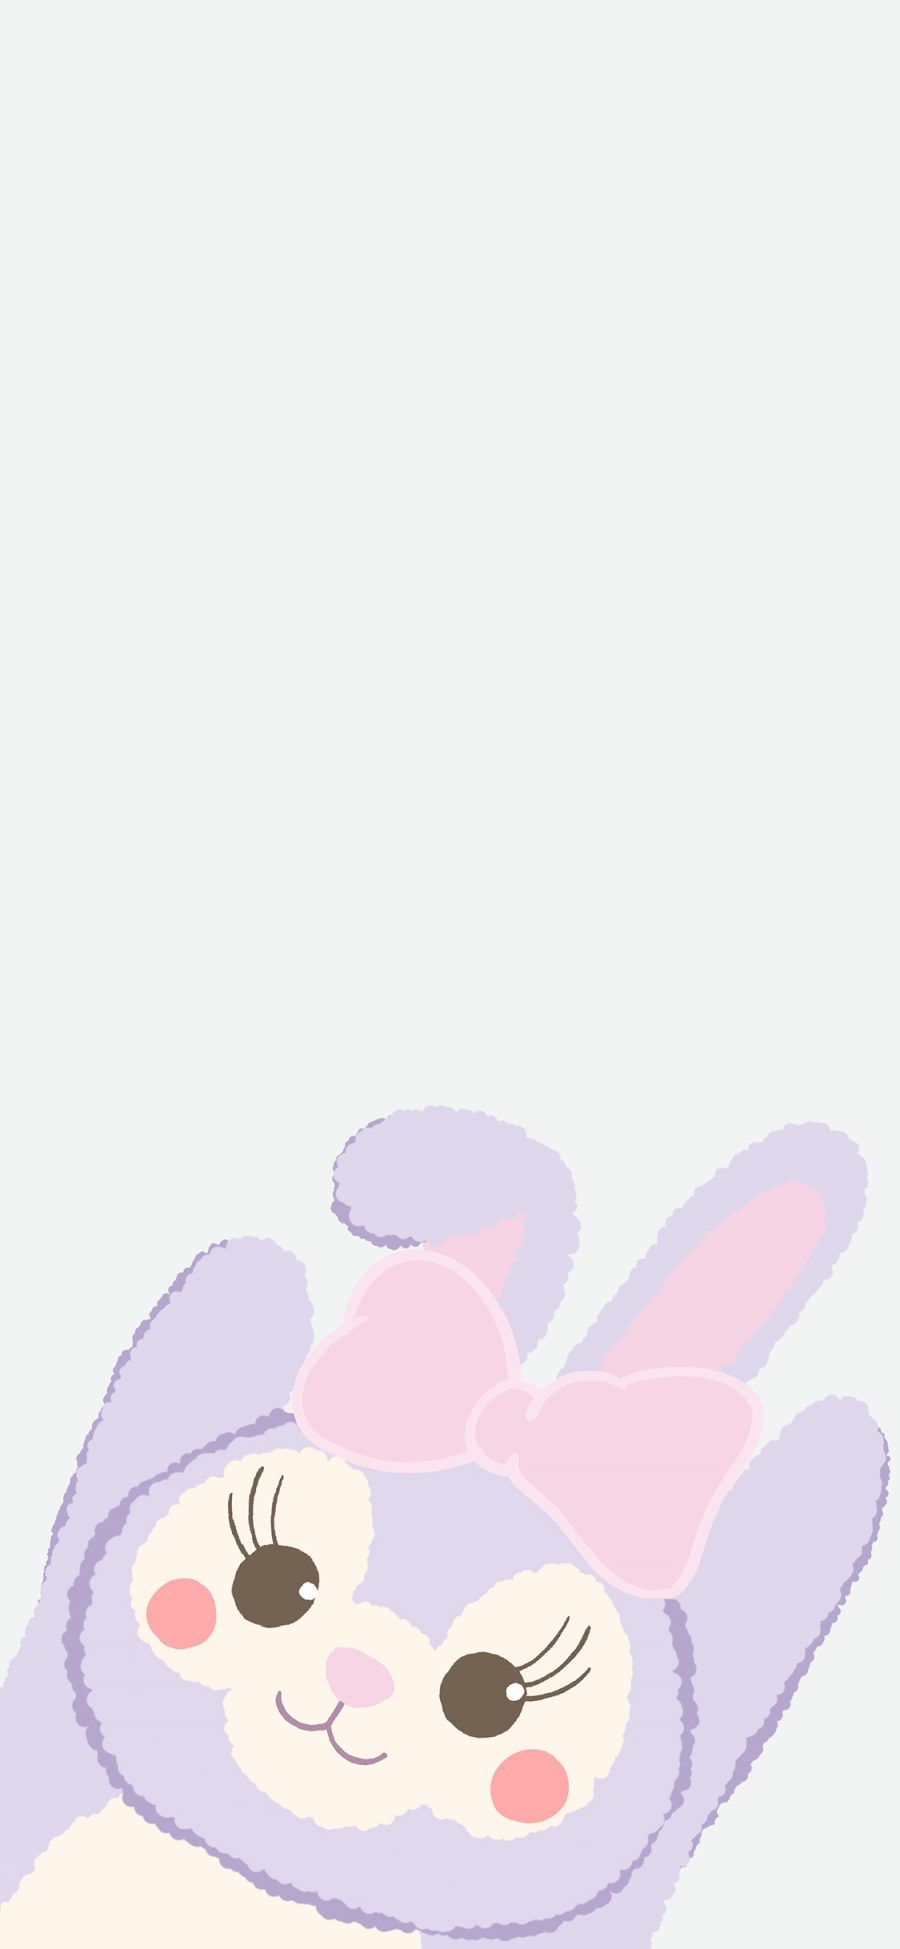 [2436×1125]星黛露 迪士尼 紫色 动画 可爱 苹果手机动漫壁纸图片